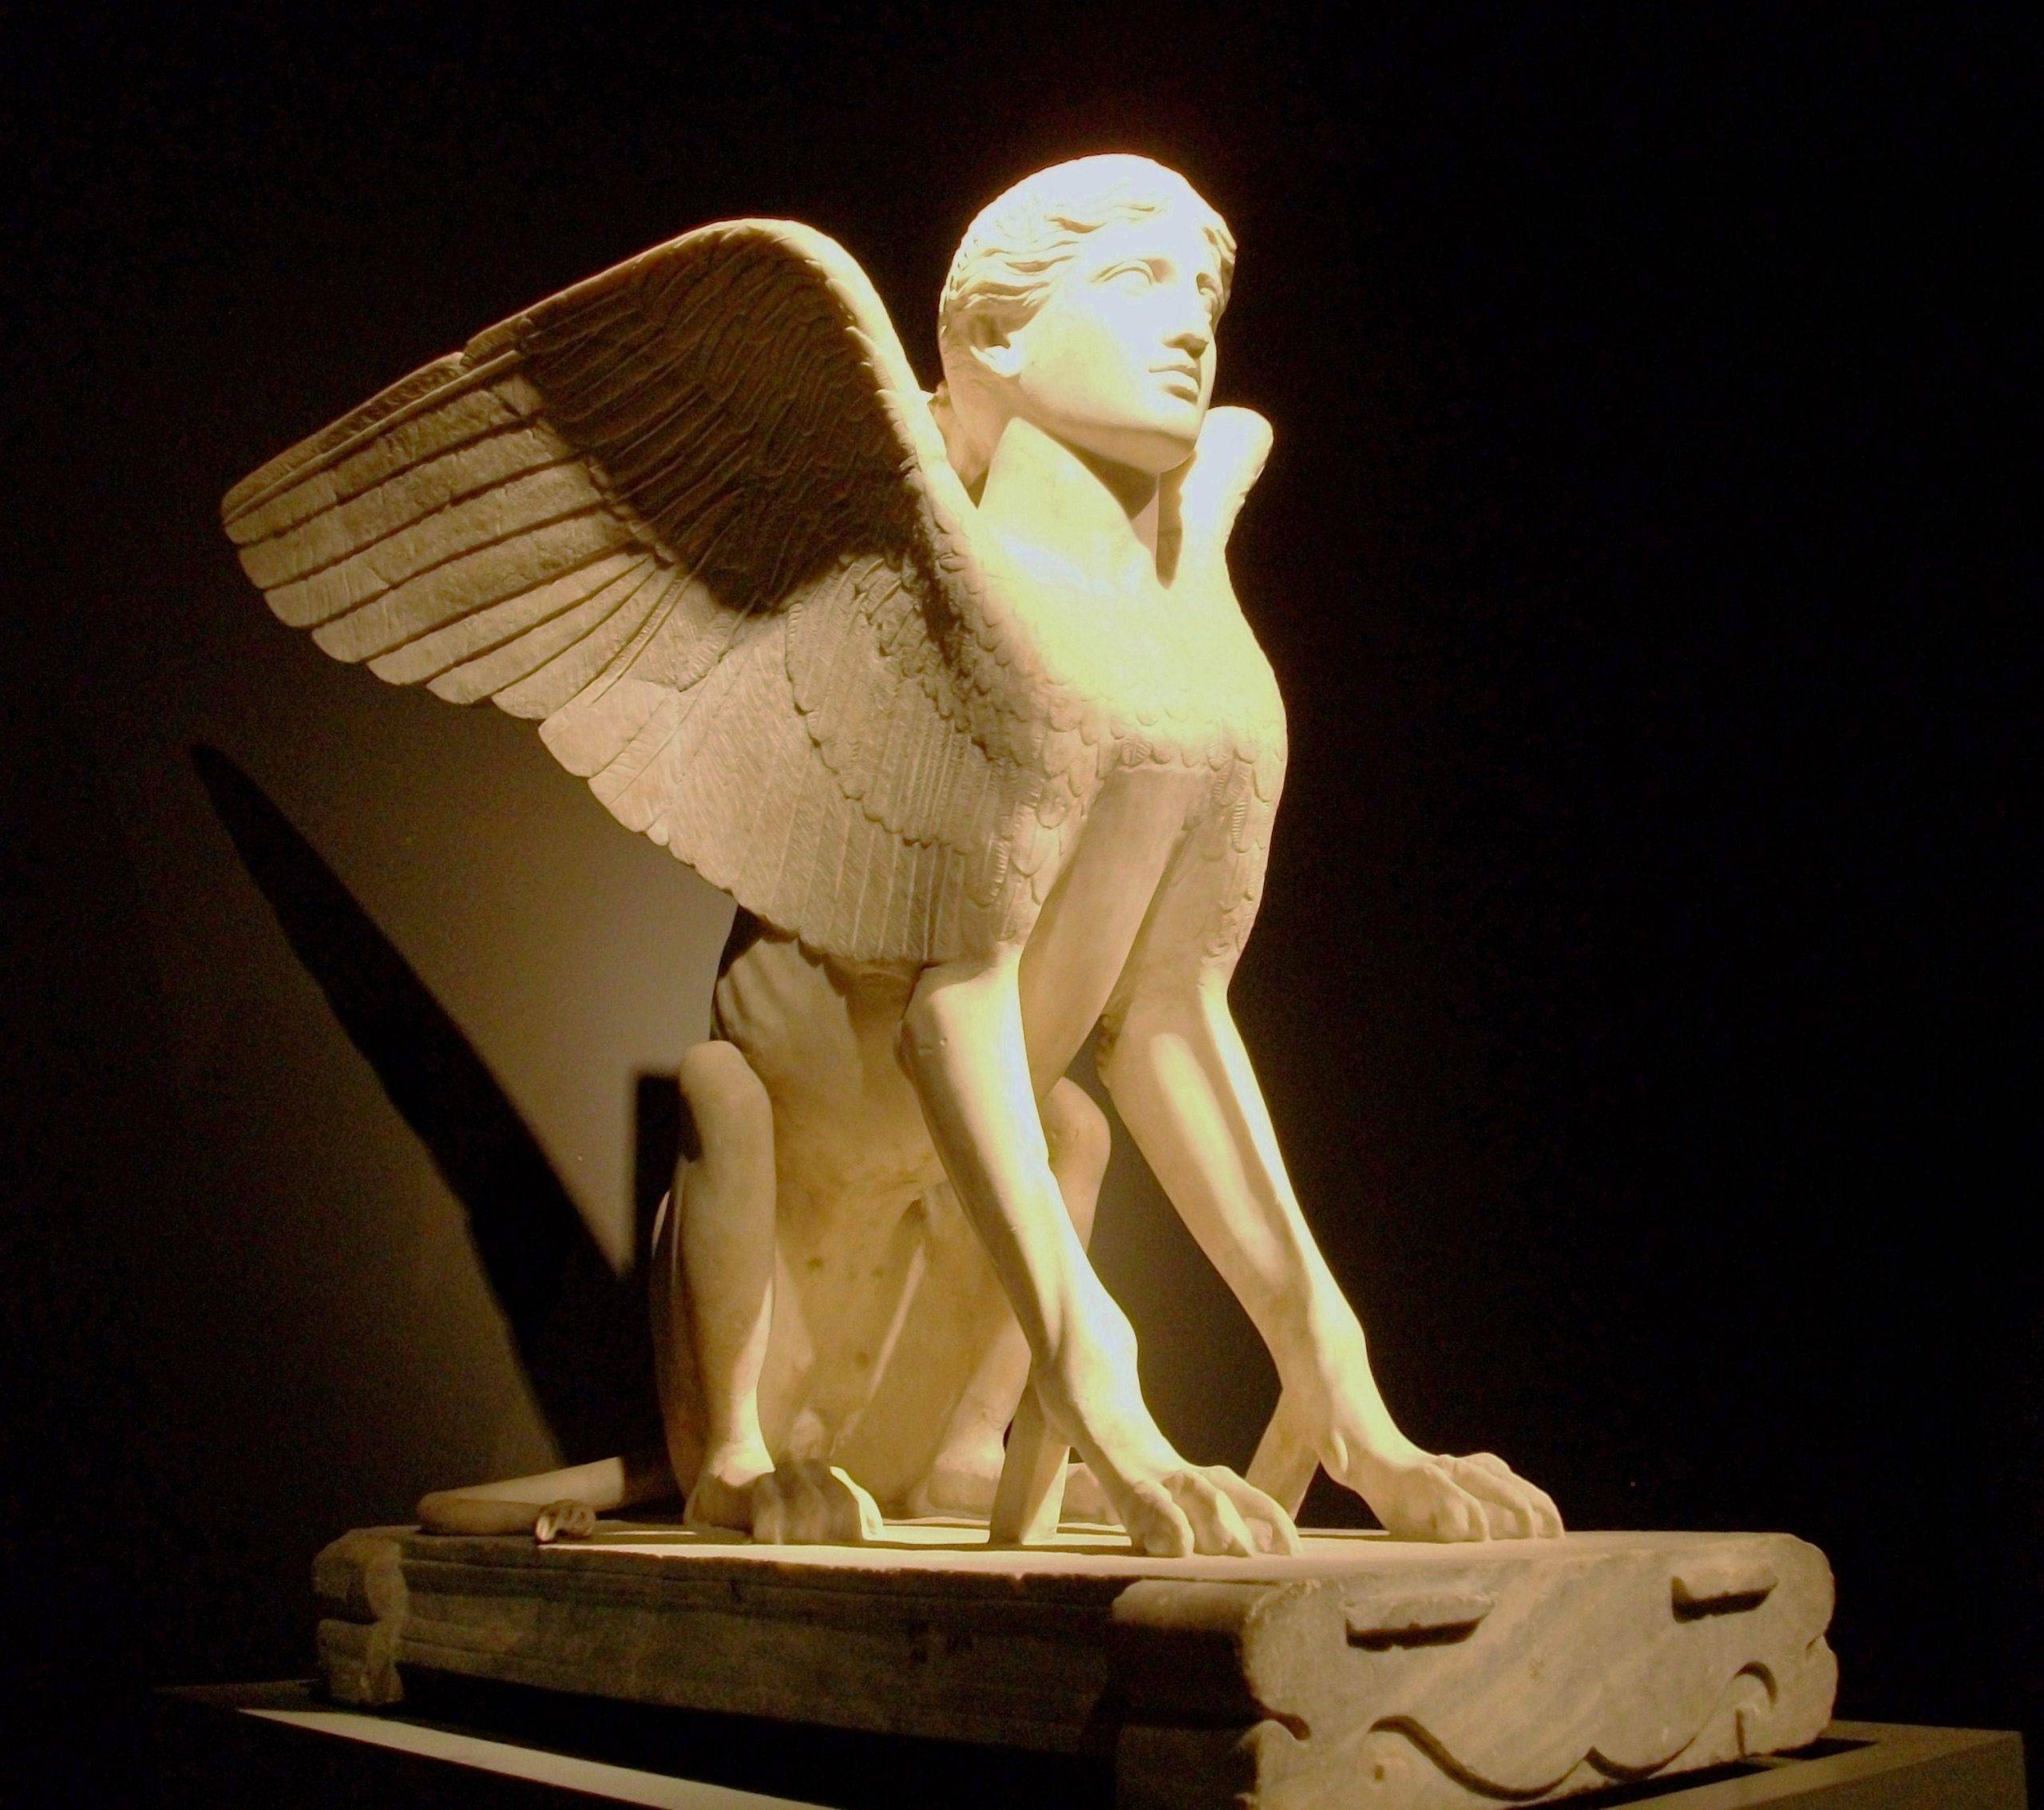 the sphinx of lanuvium